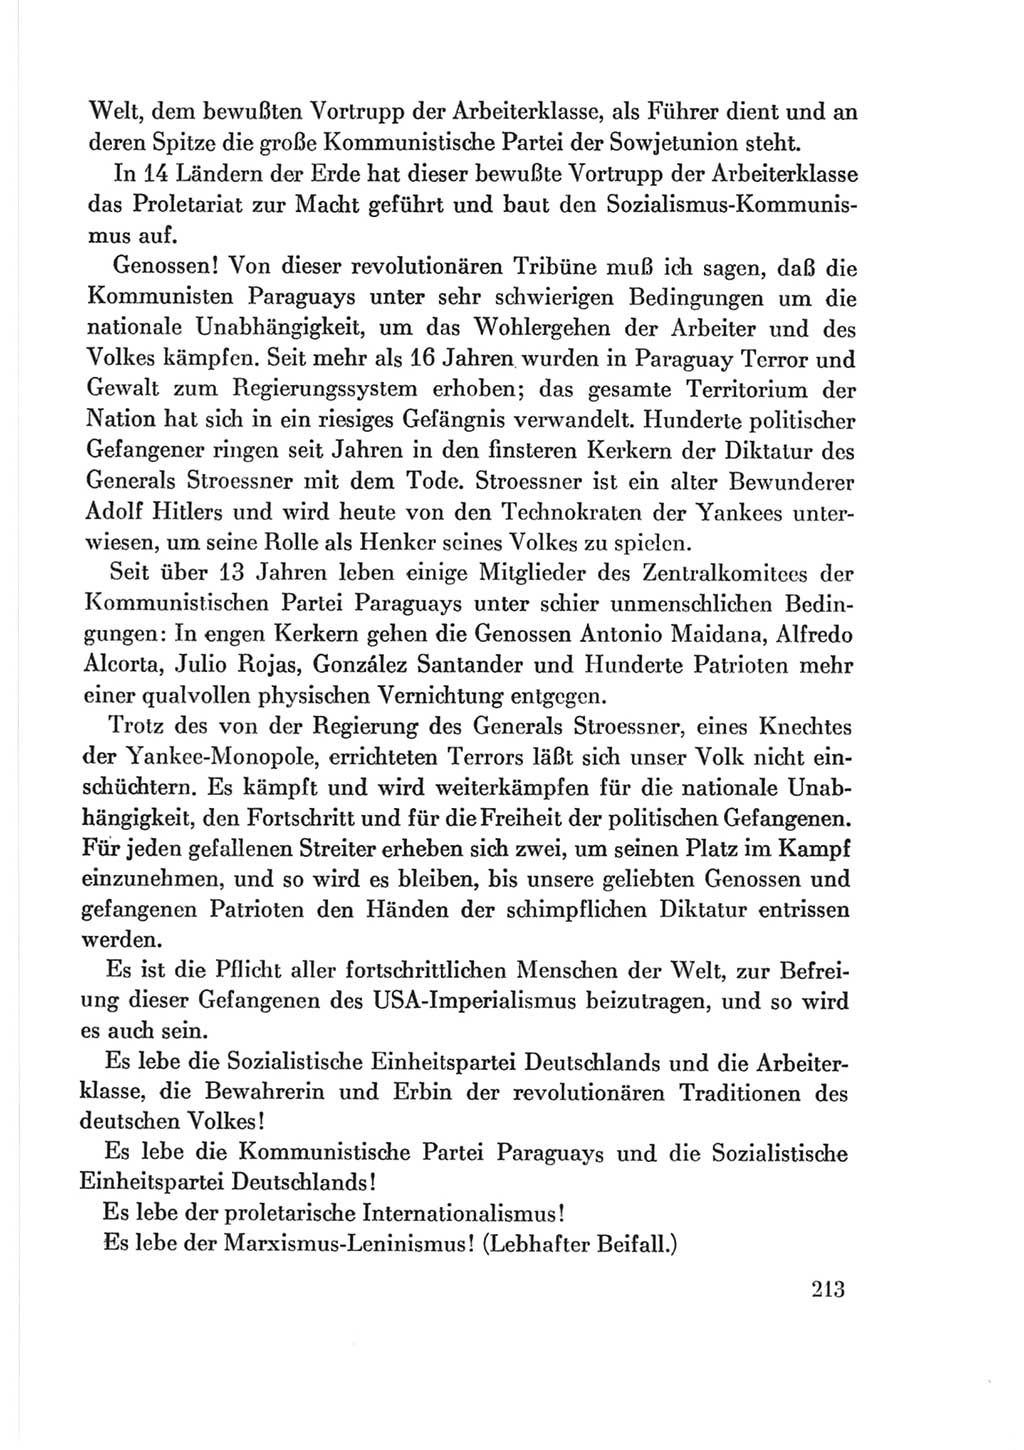 Protokoll der Verhandlungen des Ⅷ. Parteitages der Sozialistischen Einheitspartei Deutschlands (SED) [Deutsche Demokratische Republik (DDR)] 1971, Band 2, Seite 213 (Prot. Verh. Ⅷ. PT SED DDR 1971, Bd. 2, S. 213)